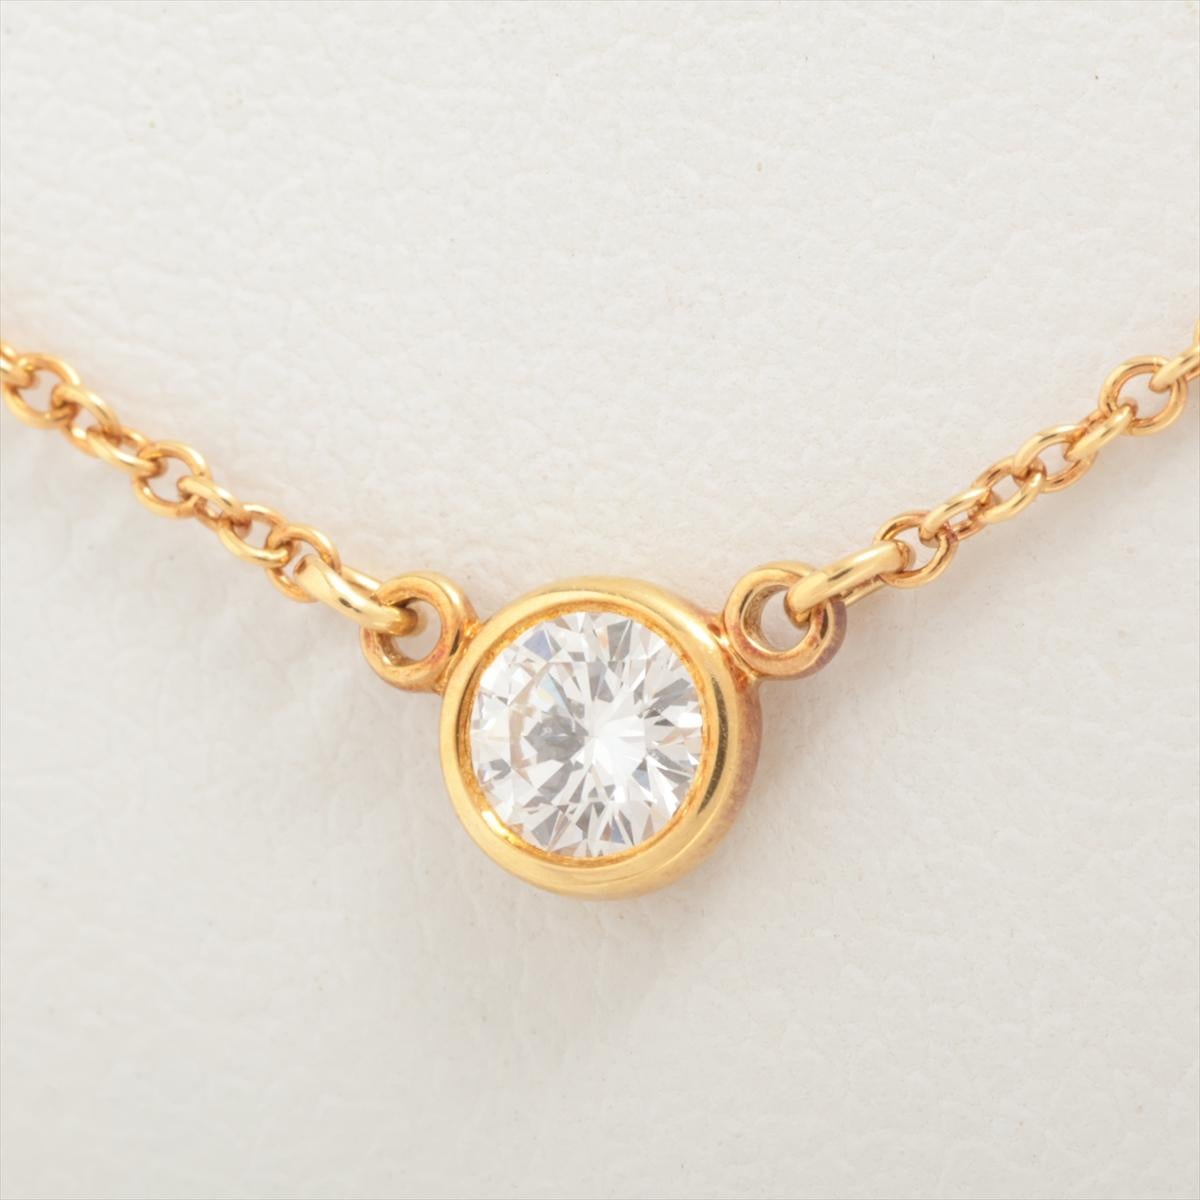 La collection Tiffany & Co. Le collier Diamonds by the Yard en or est un bijou éblouissant et polyvalent qui incarne l'héritage de la marque en matière de luxe et de savoir-faire. Fabriqué en or de haute qualité, ce collier arbore une teinte chaude